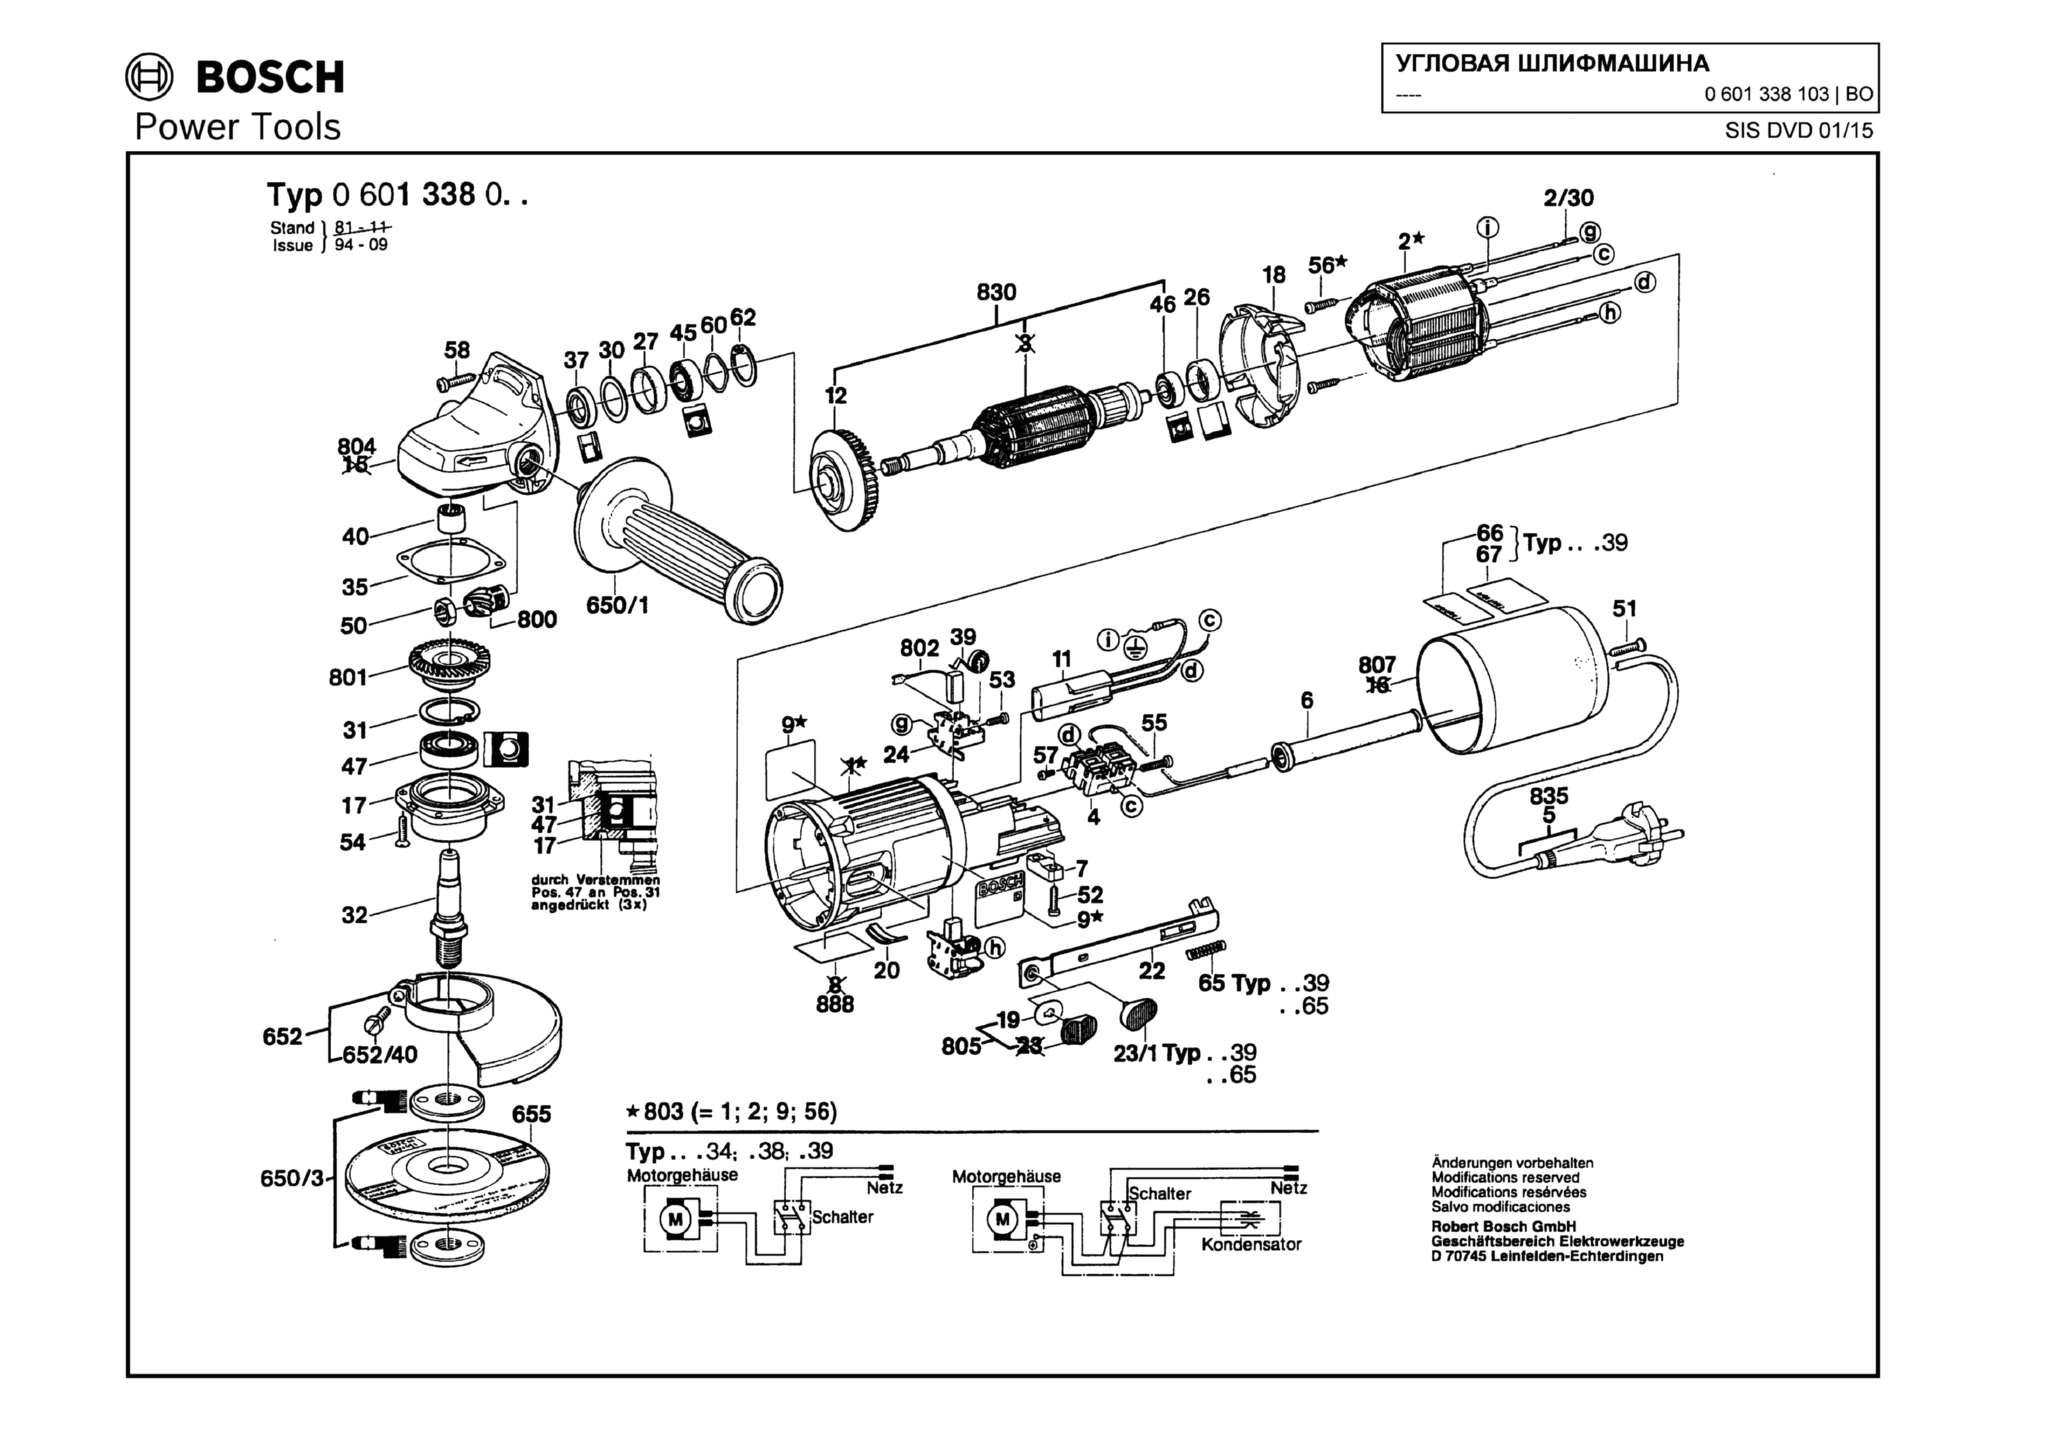 Запчасти, схема и деталировка Bosch (ТИП 0601338103)